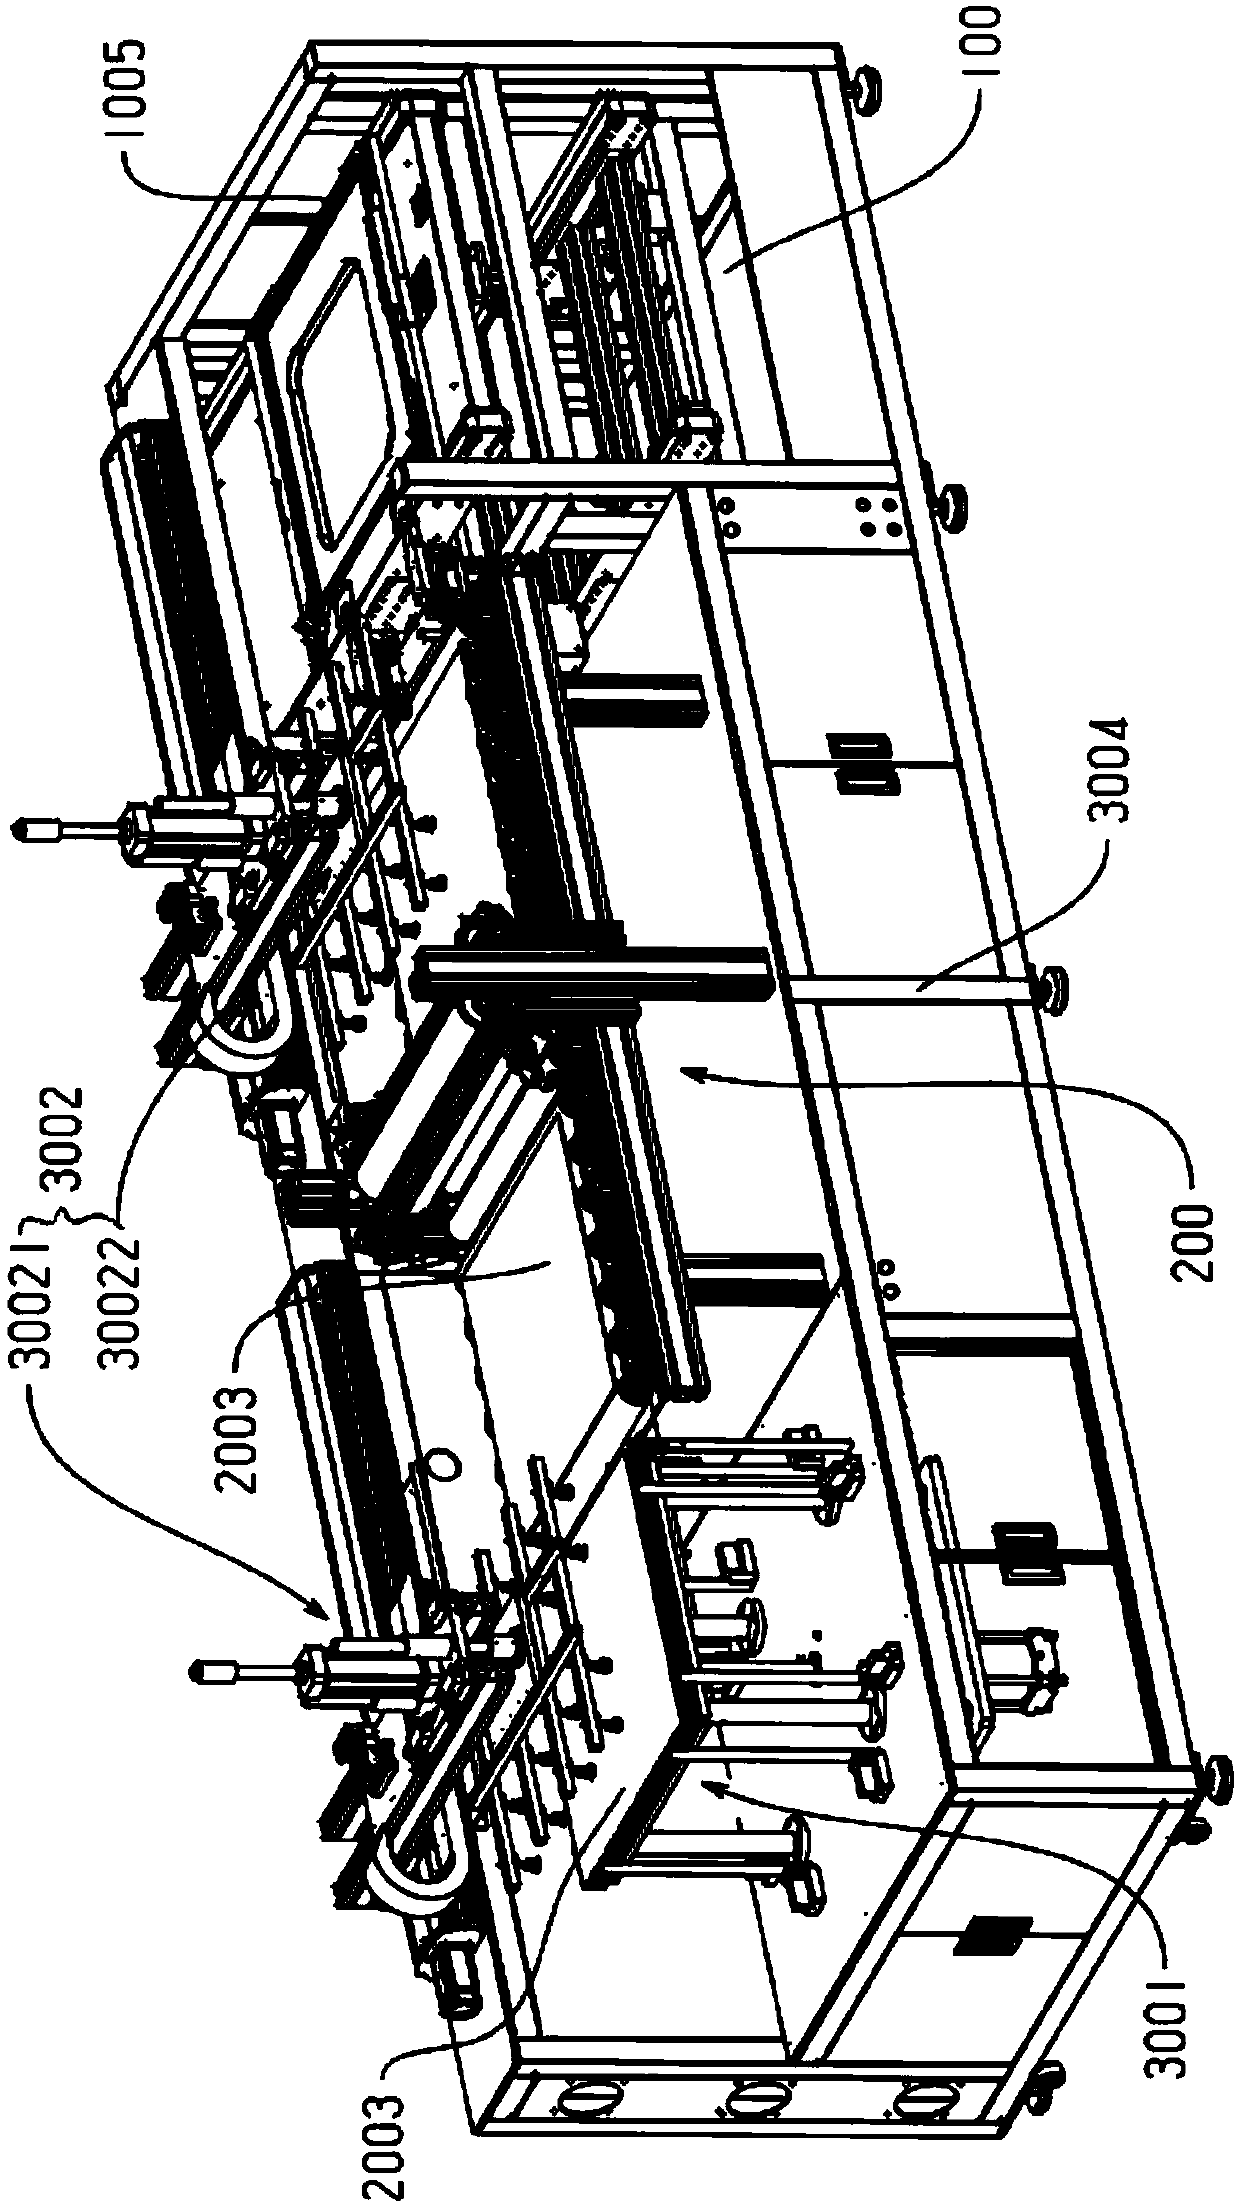 Overlapping and assembling station for panel light assembling line